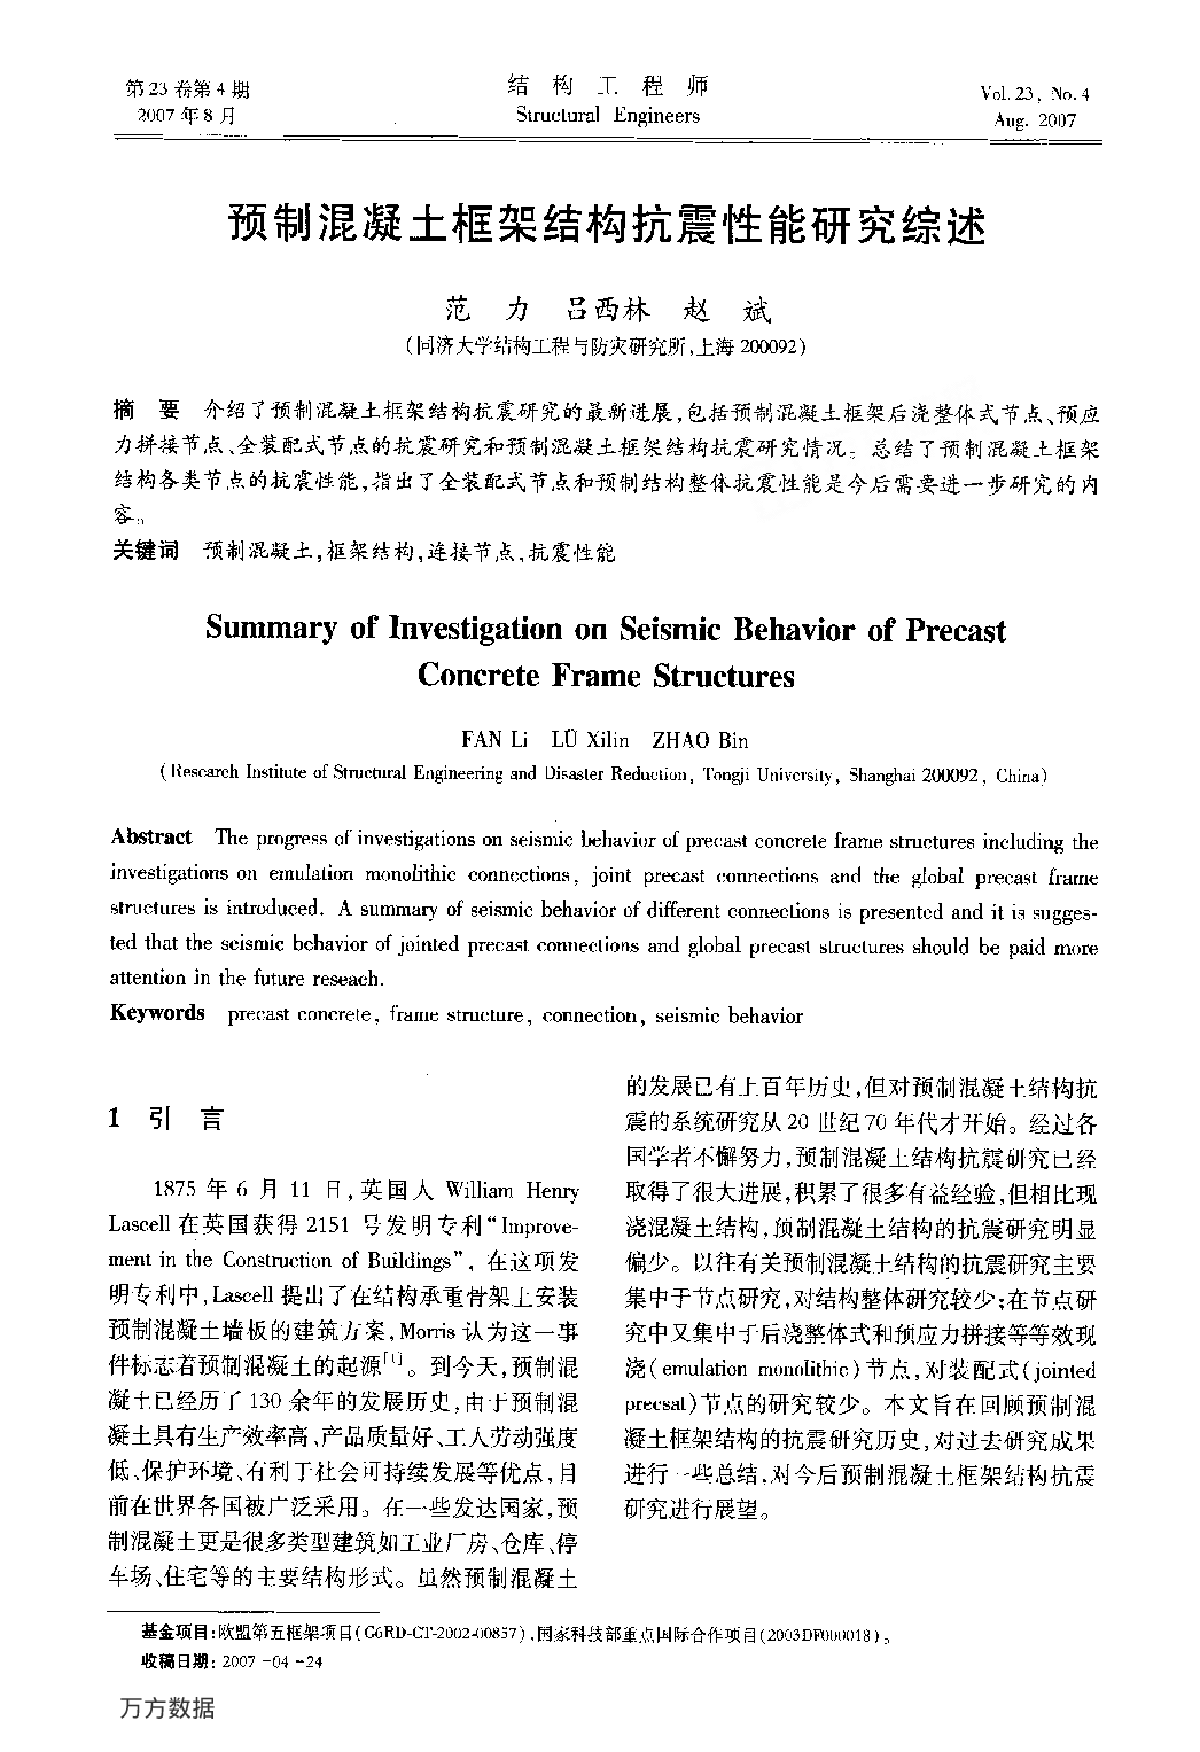 预制混凝土框架结构抗震性能研究综述.pdf